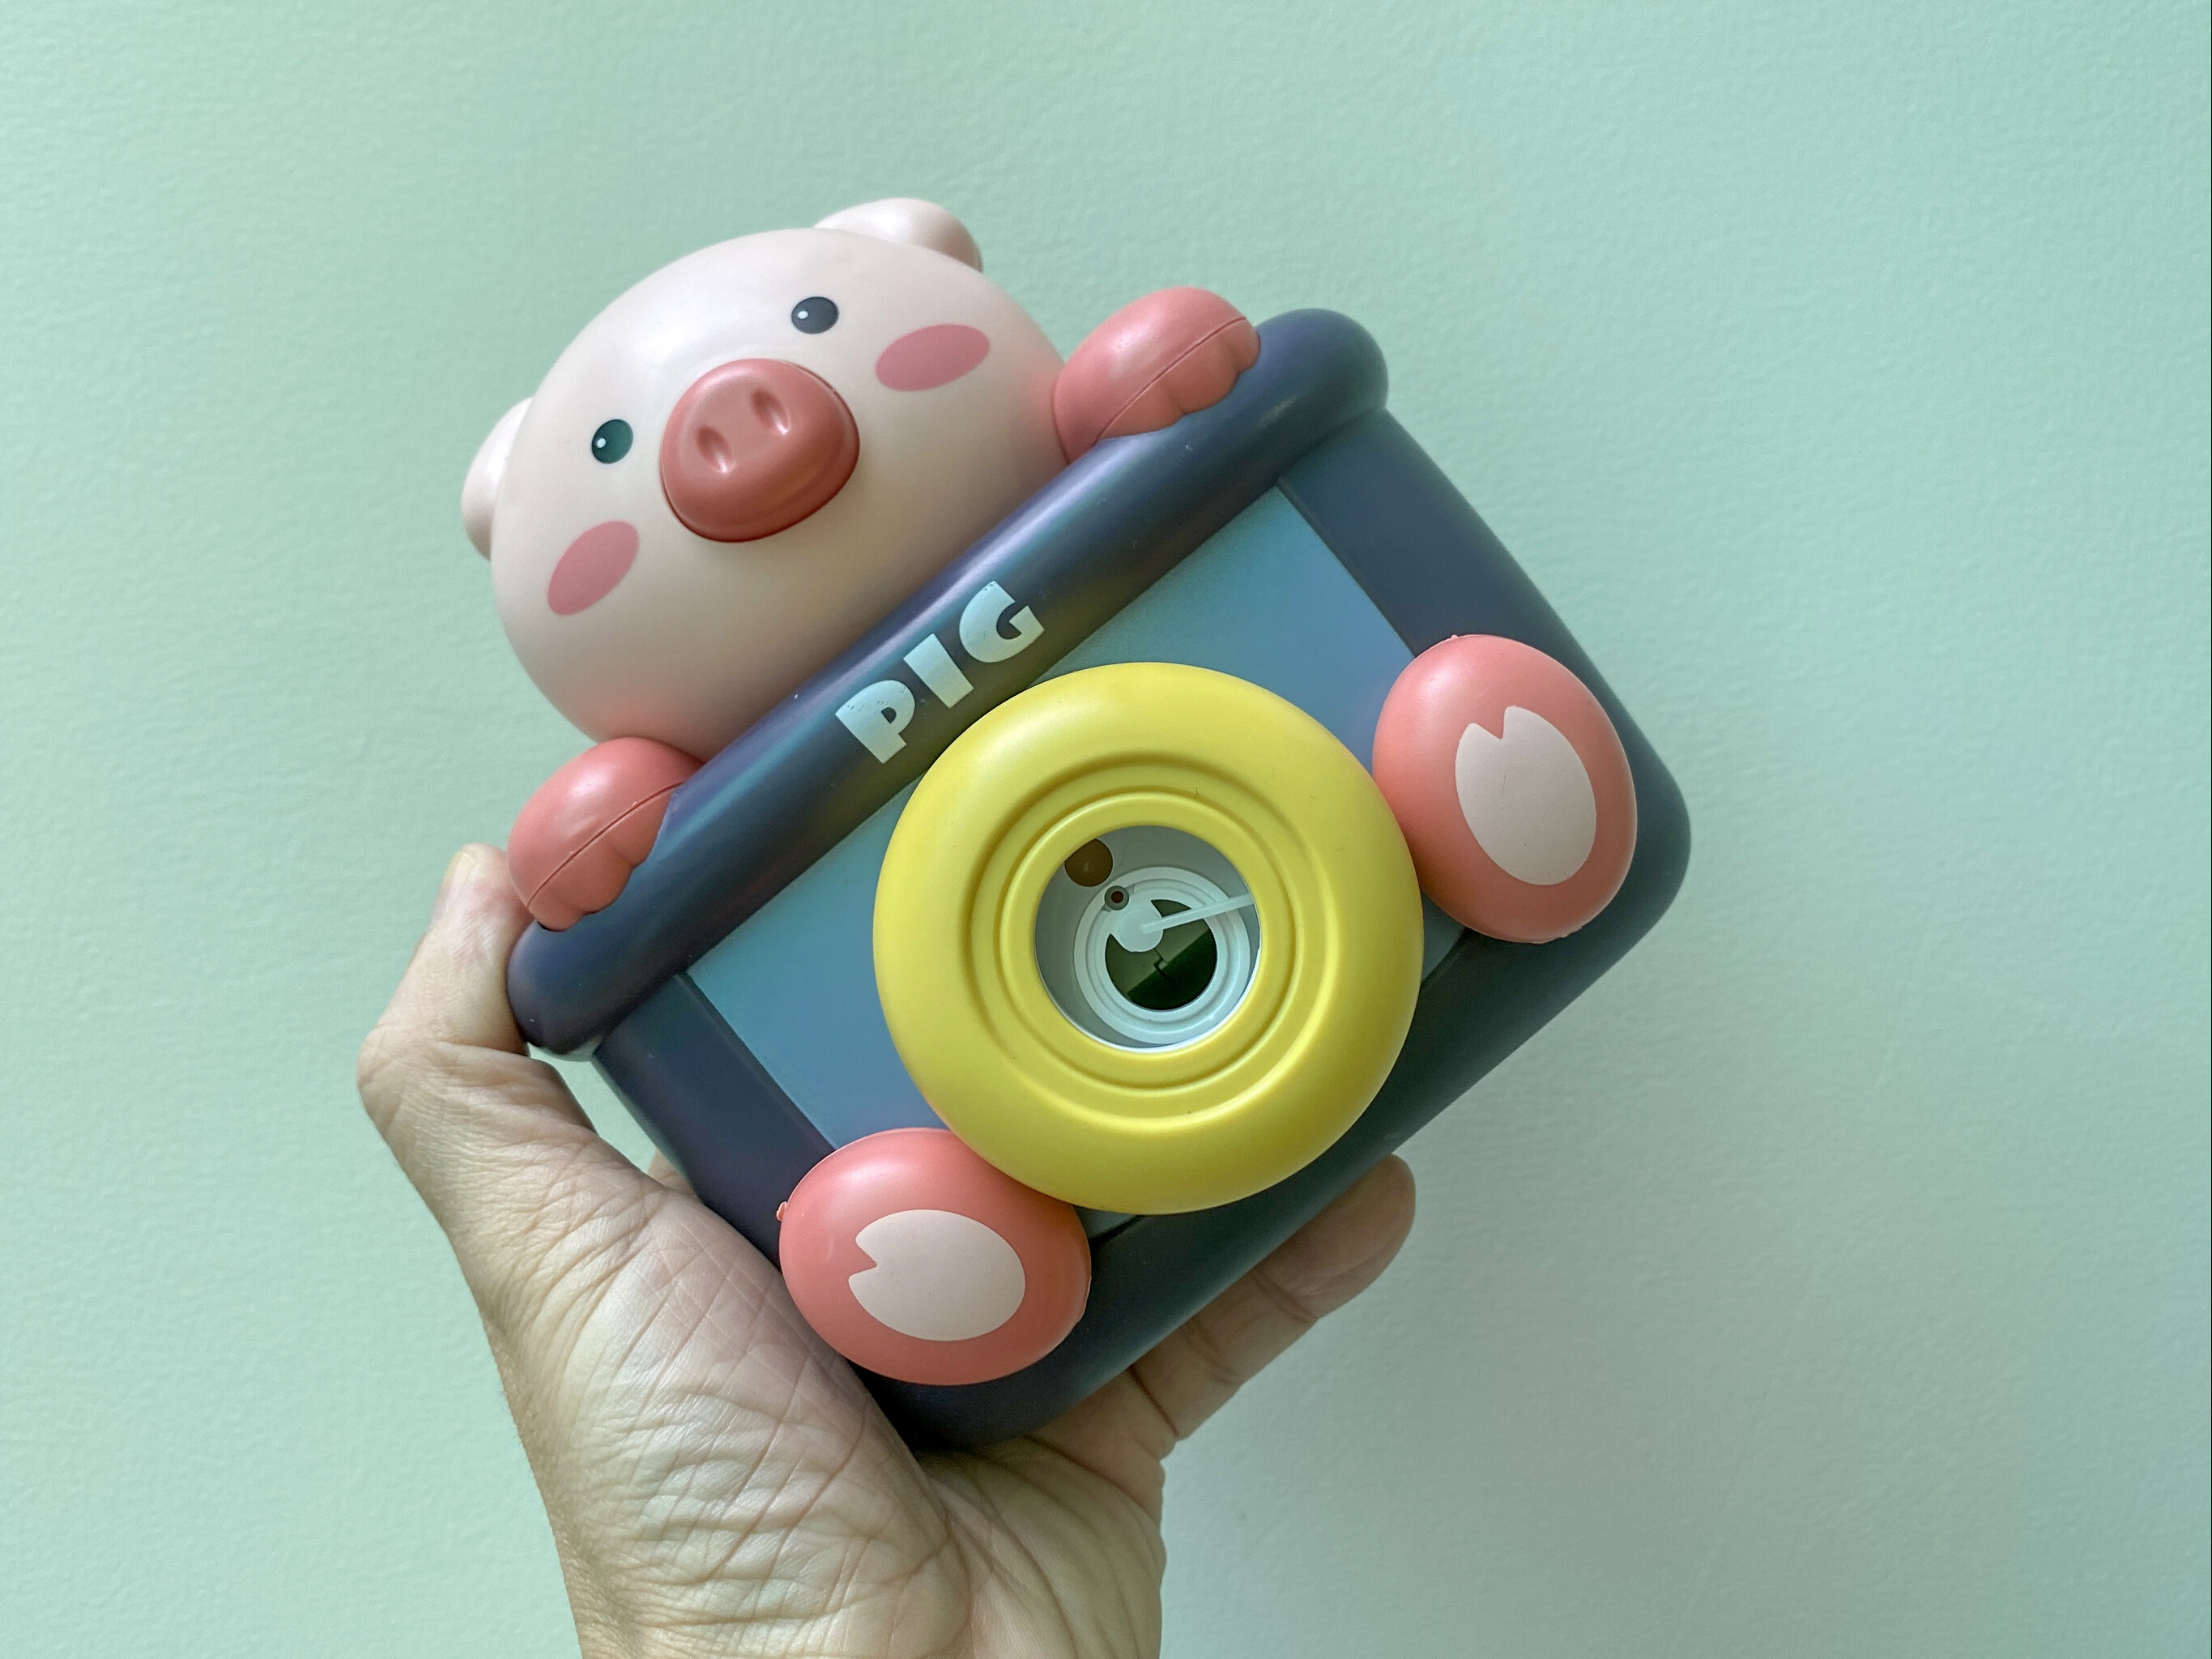 Đồ chơi thổi bong bóng tự động với thiết kế giống như máy ảnh rất dễ